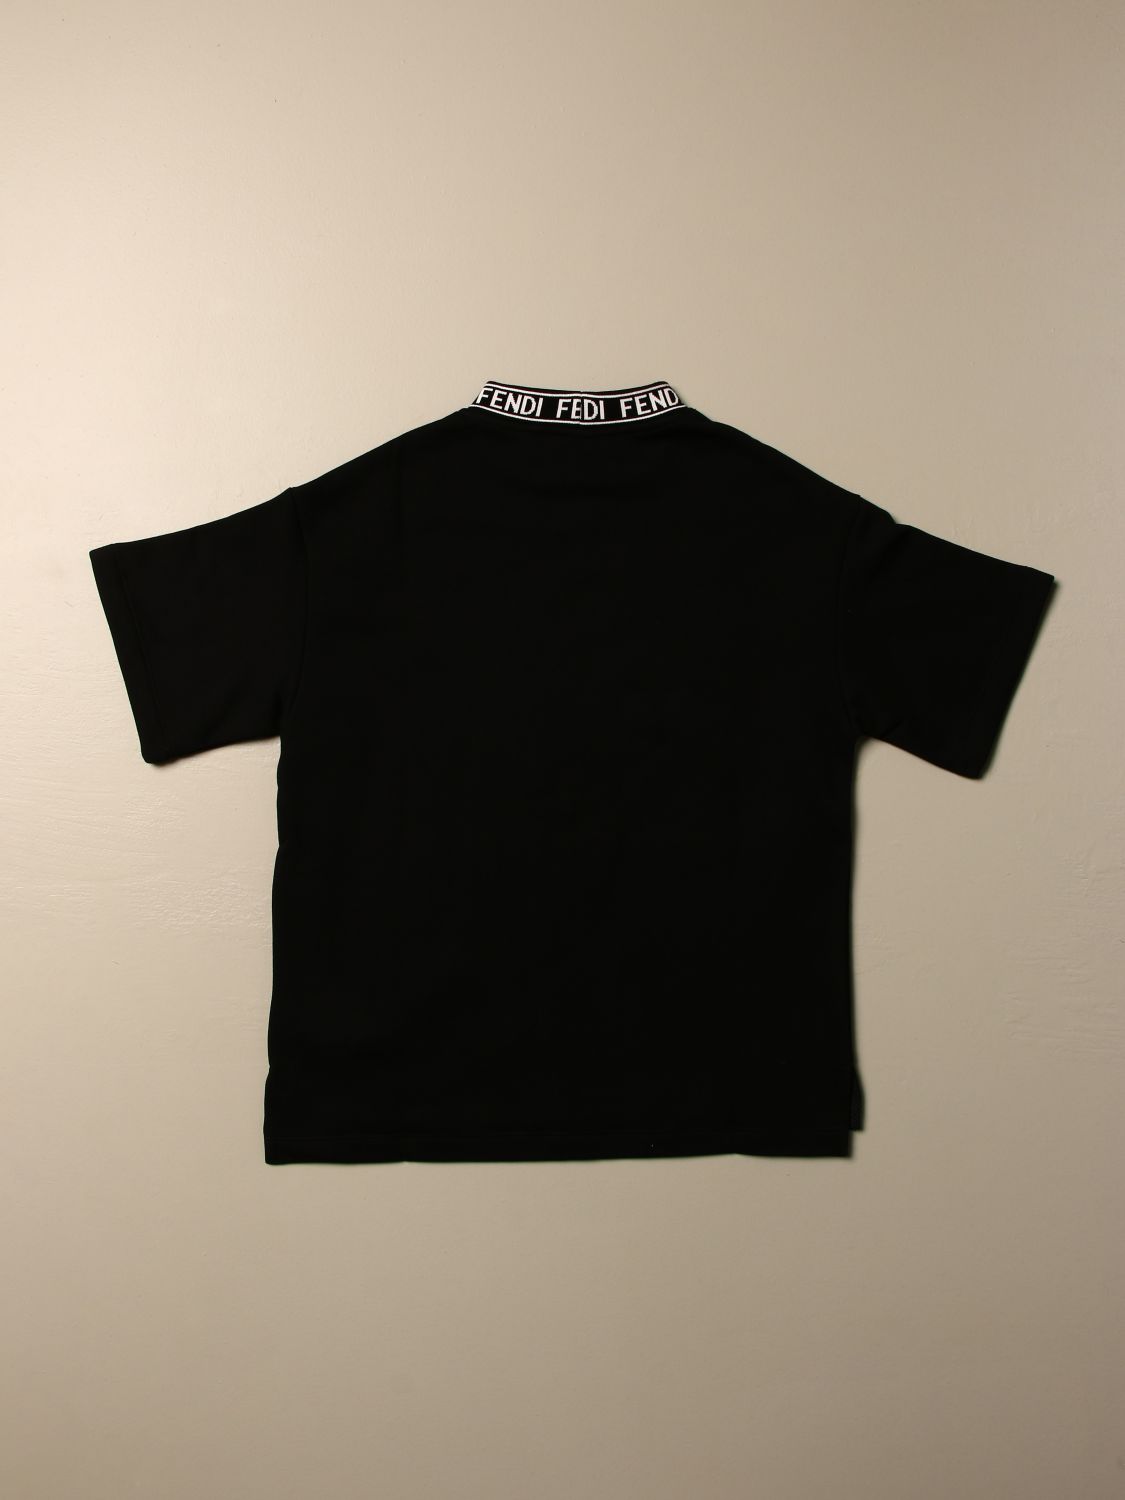 fendi black logo t shirt